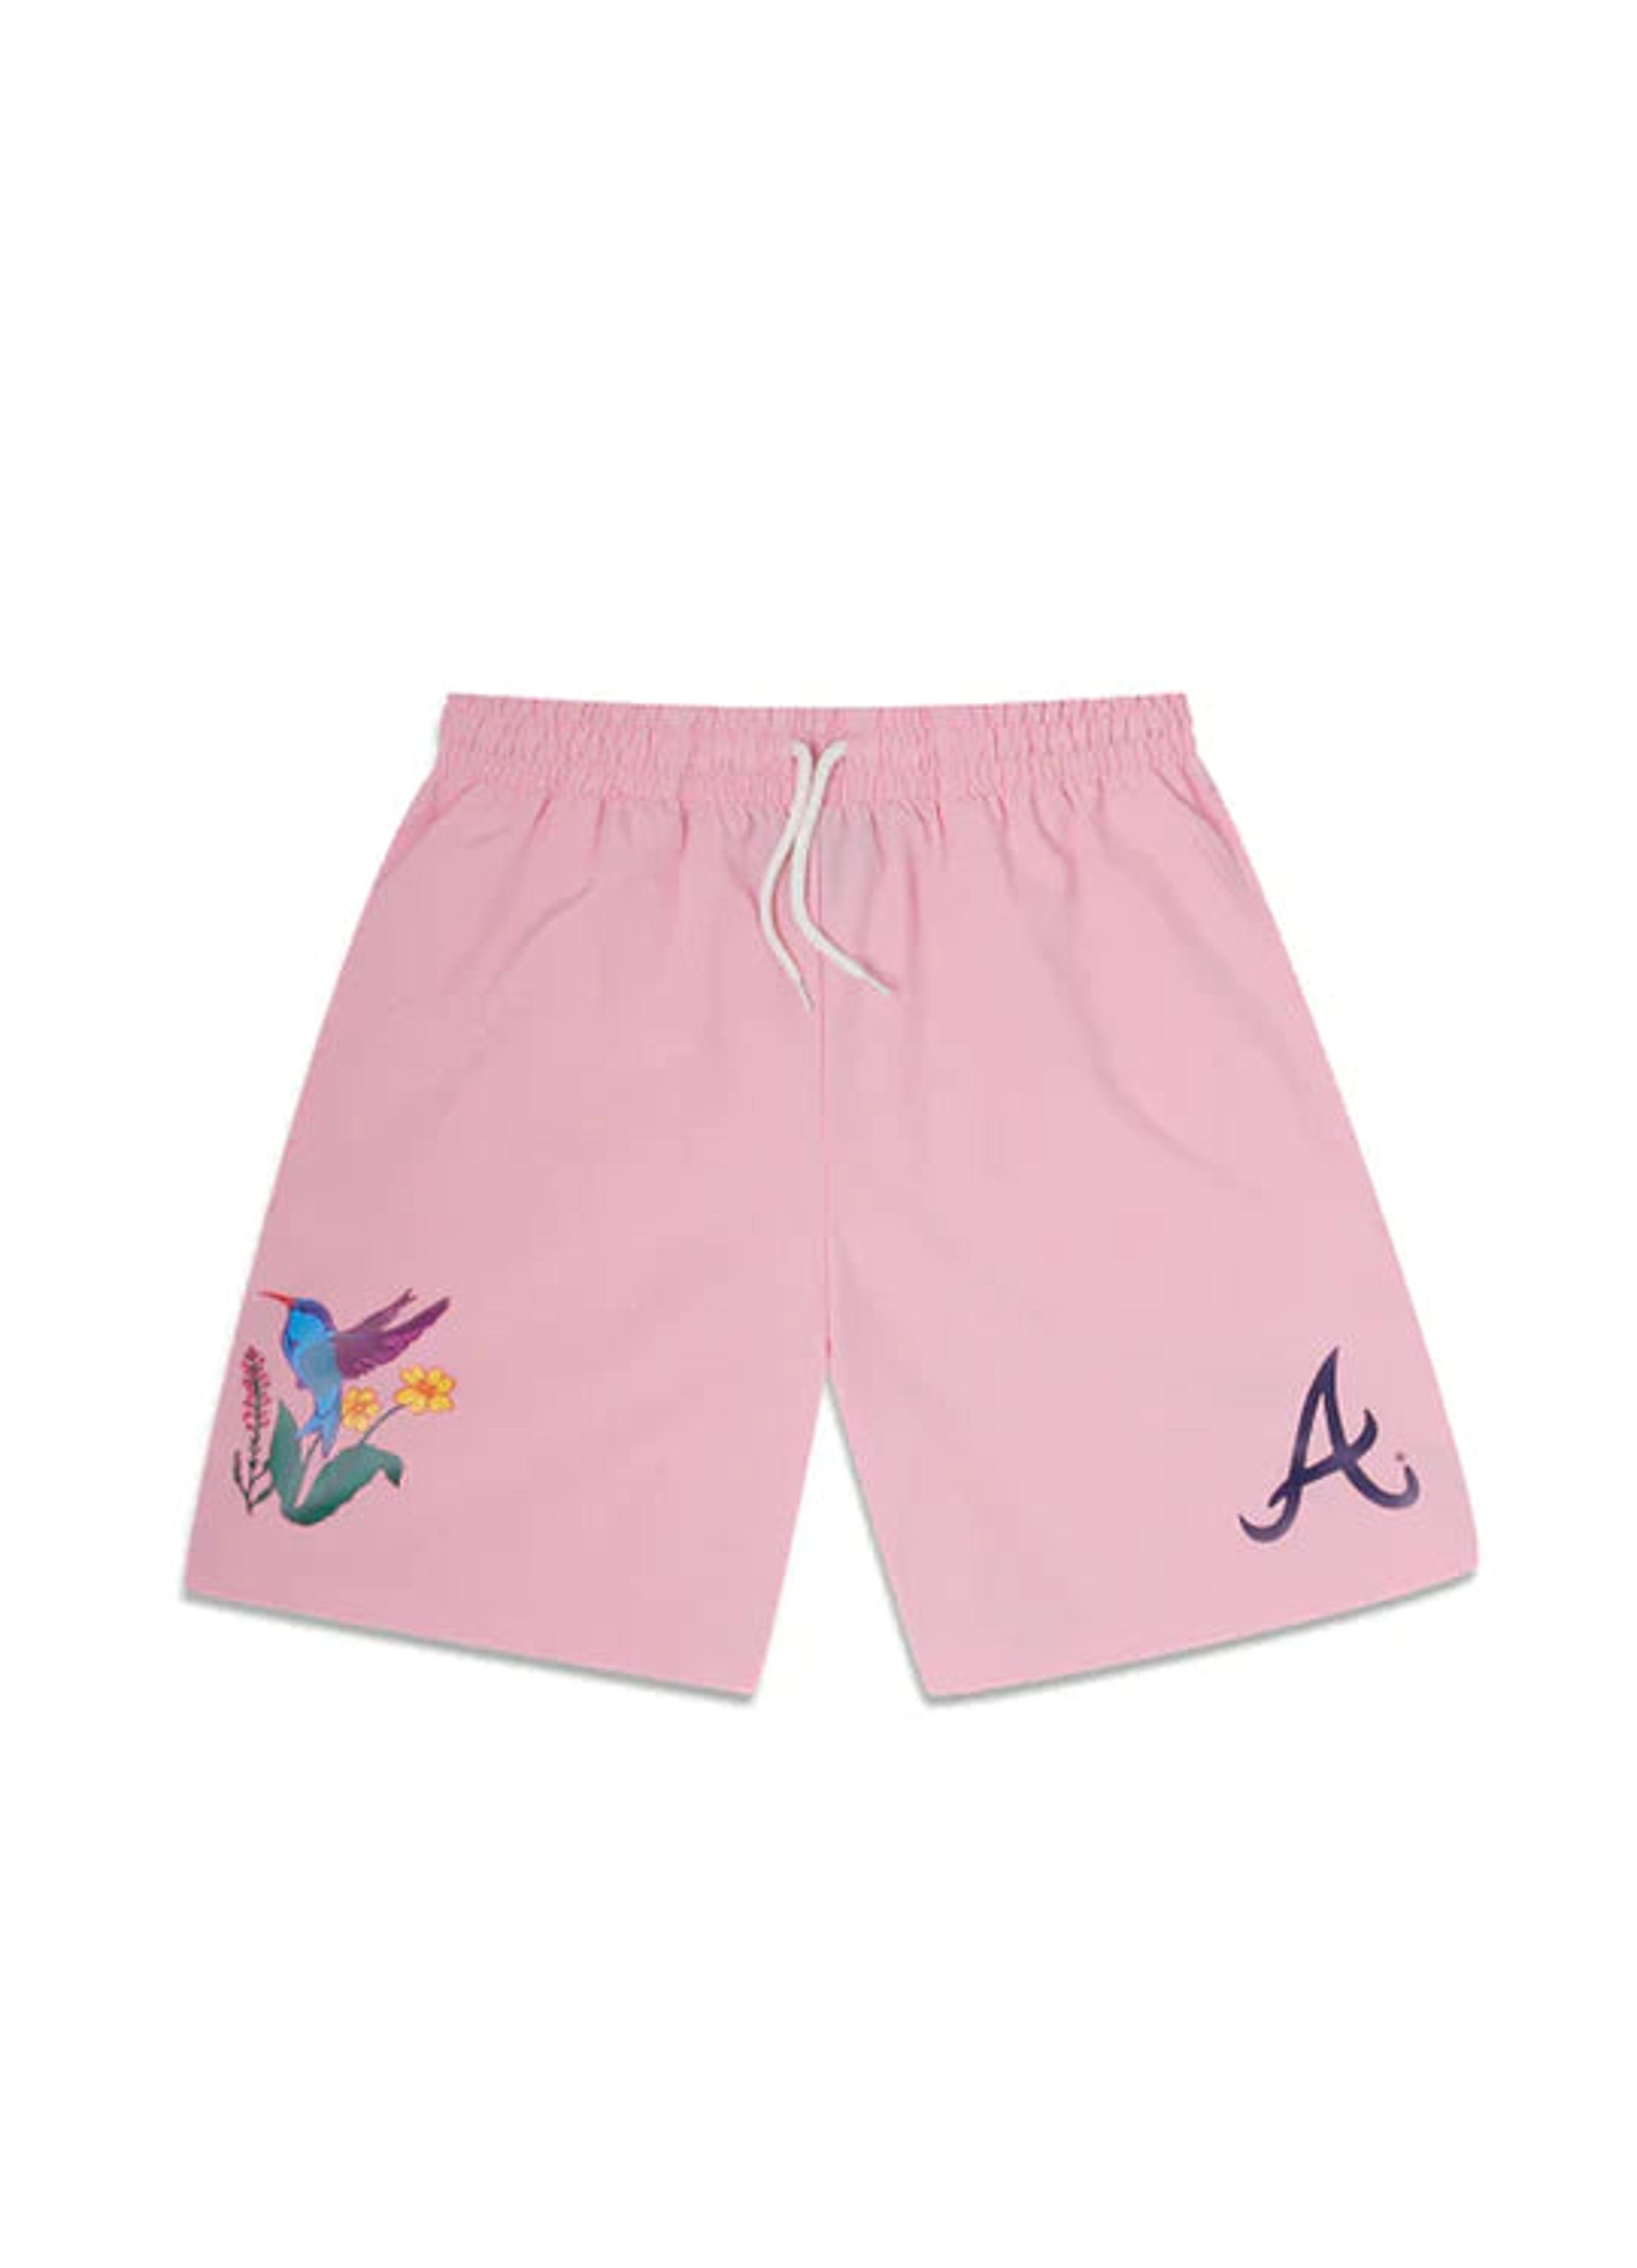 New Era Atlanta Braves Blooming Shorts - Pink